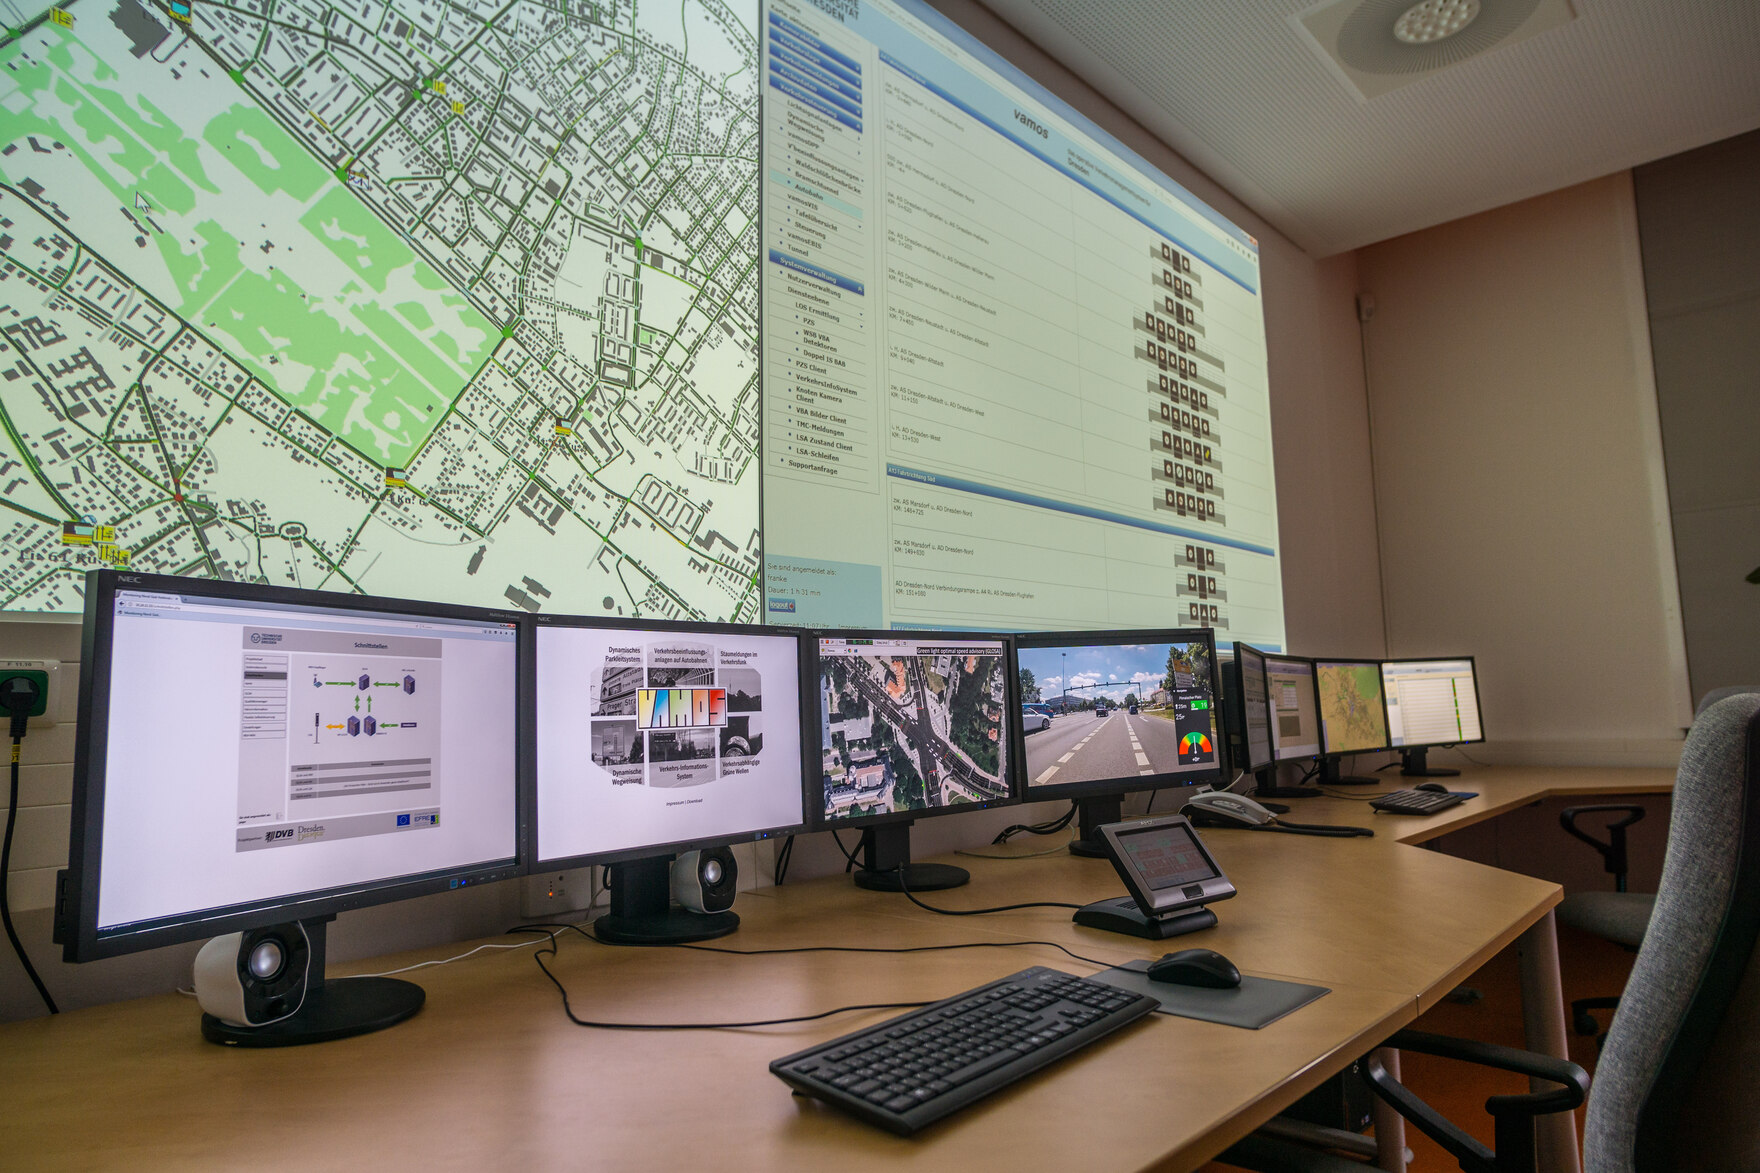 Blick in die VAMOS Leitzentrale mit Flachbildschirmen und an eine Wand projezierten Statusmeldungen für das Dresdner ÖPNV Netz